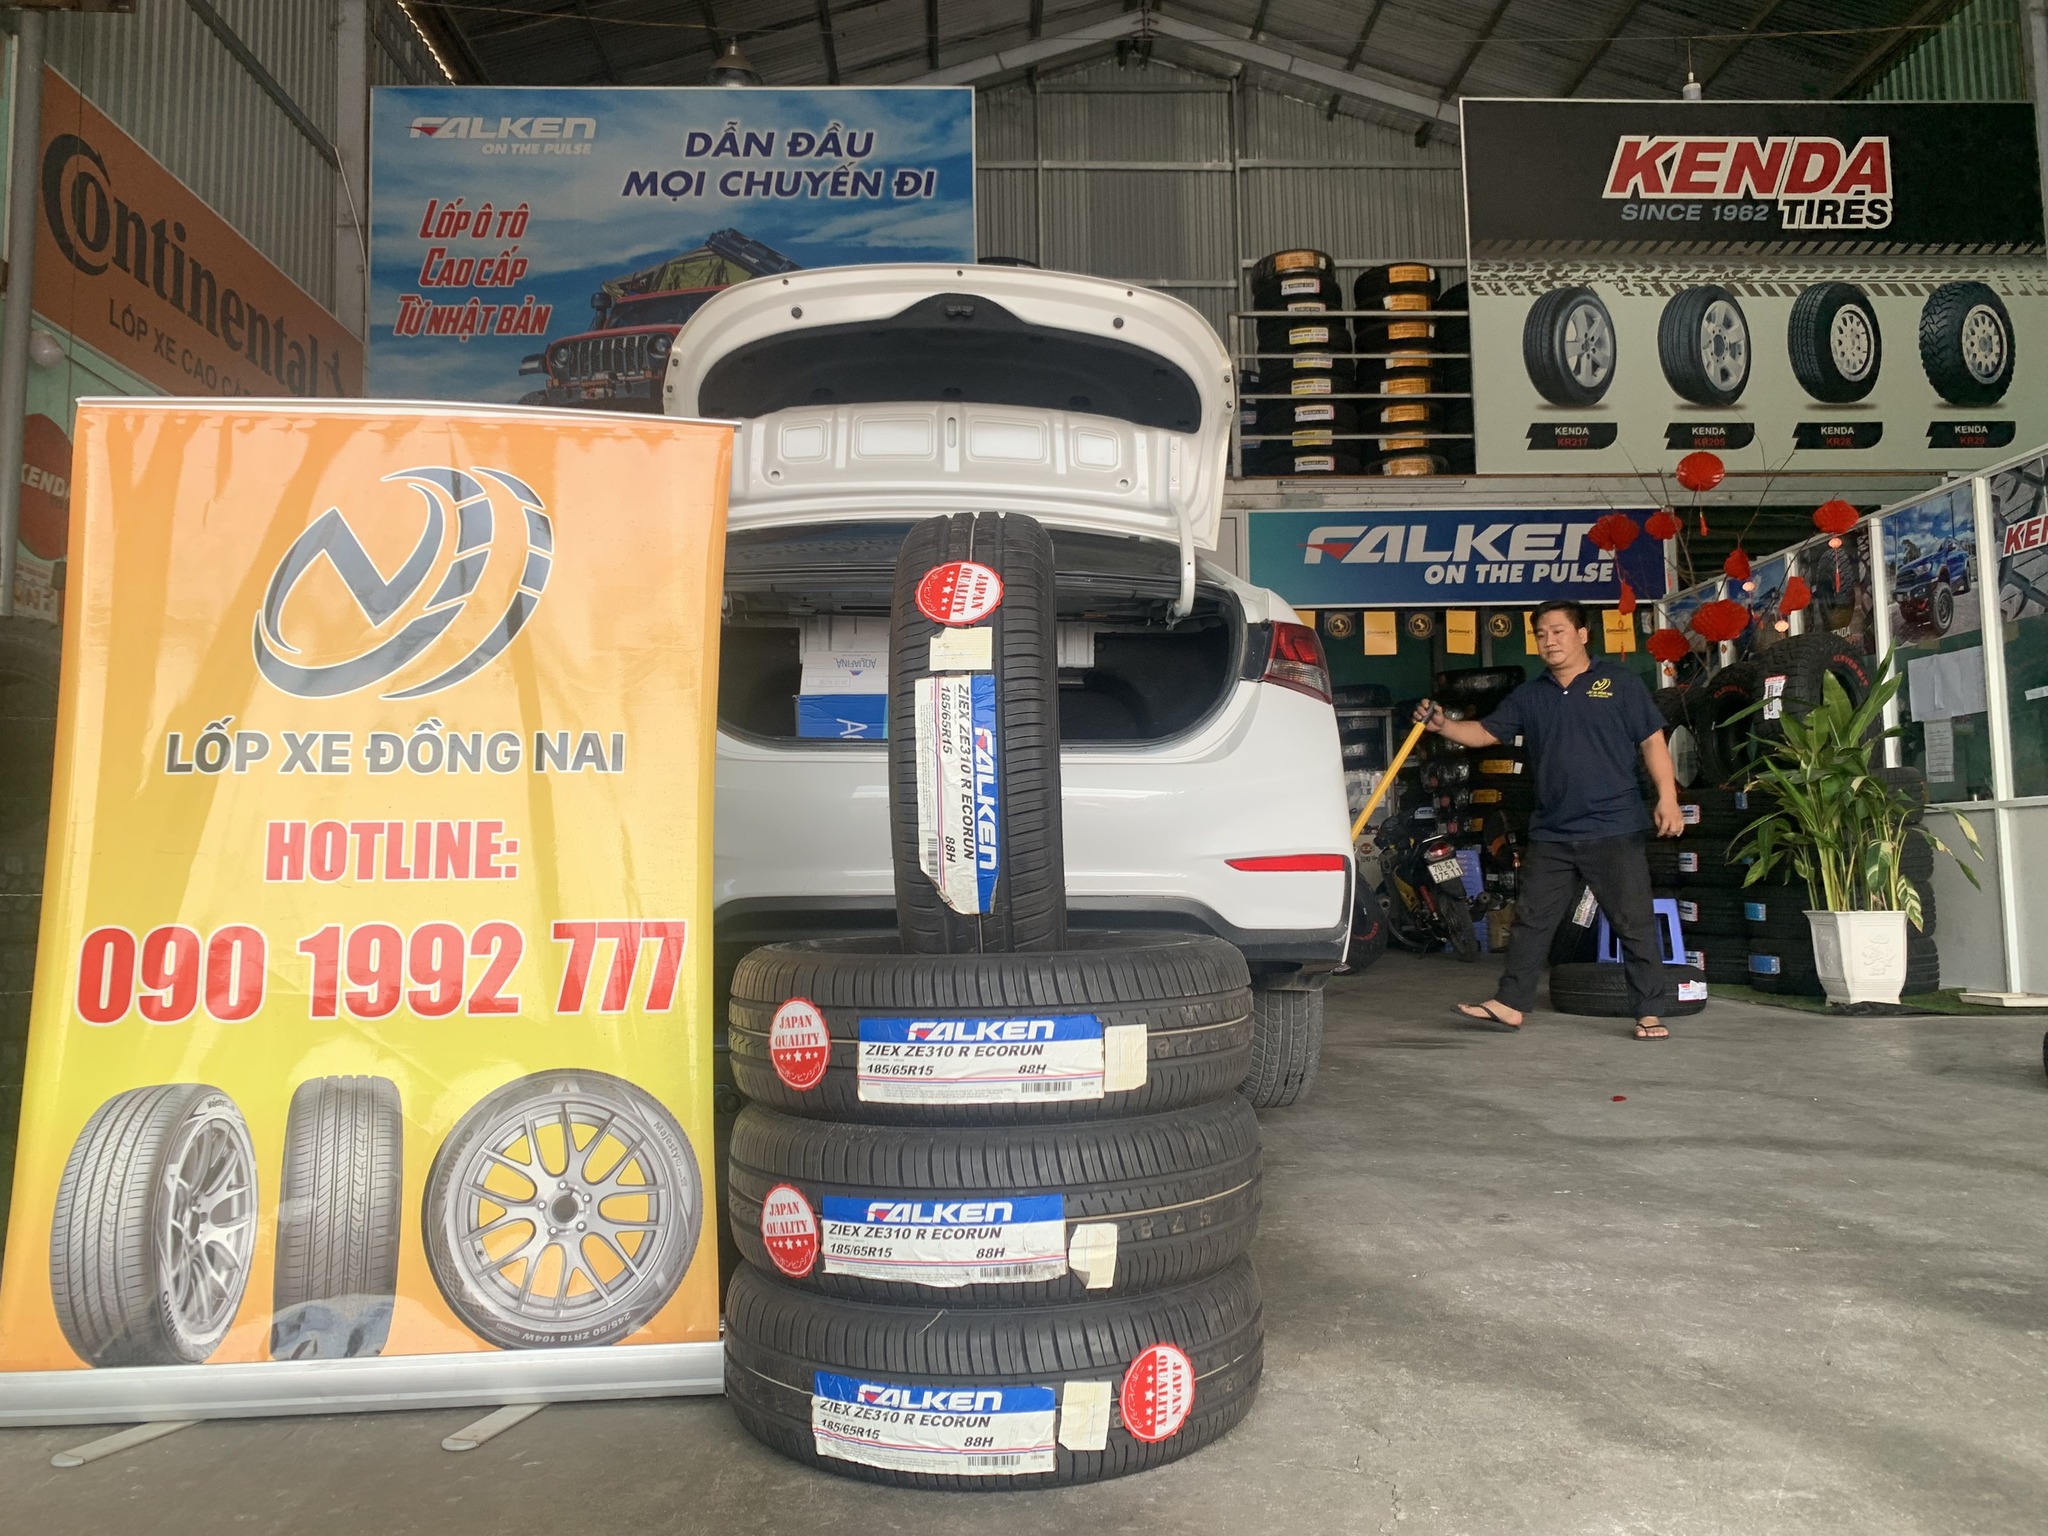 TƯ VẤN : Thay lốp xe Suzuki Ertiga ở Biên Hoà, Đông Nai.